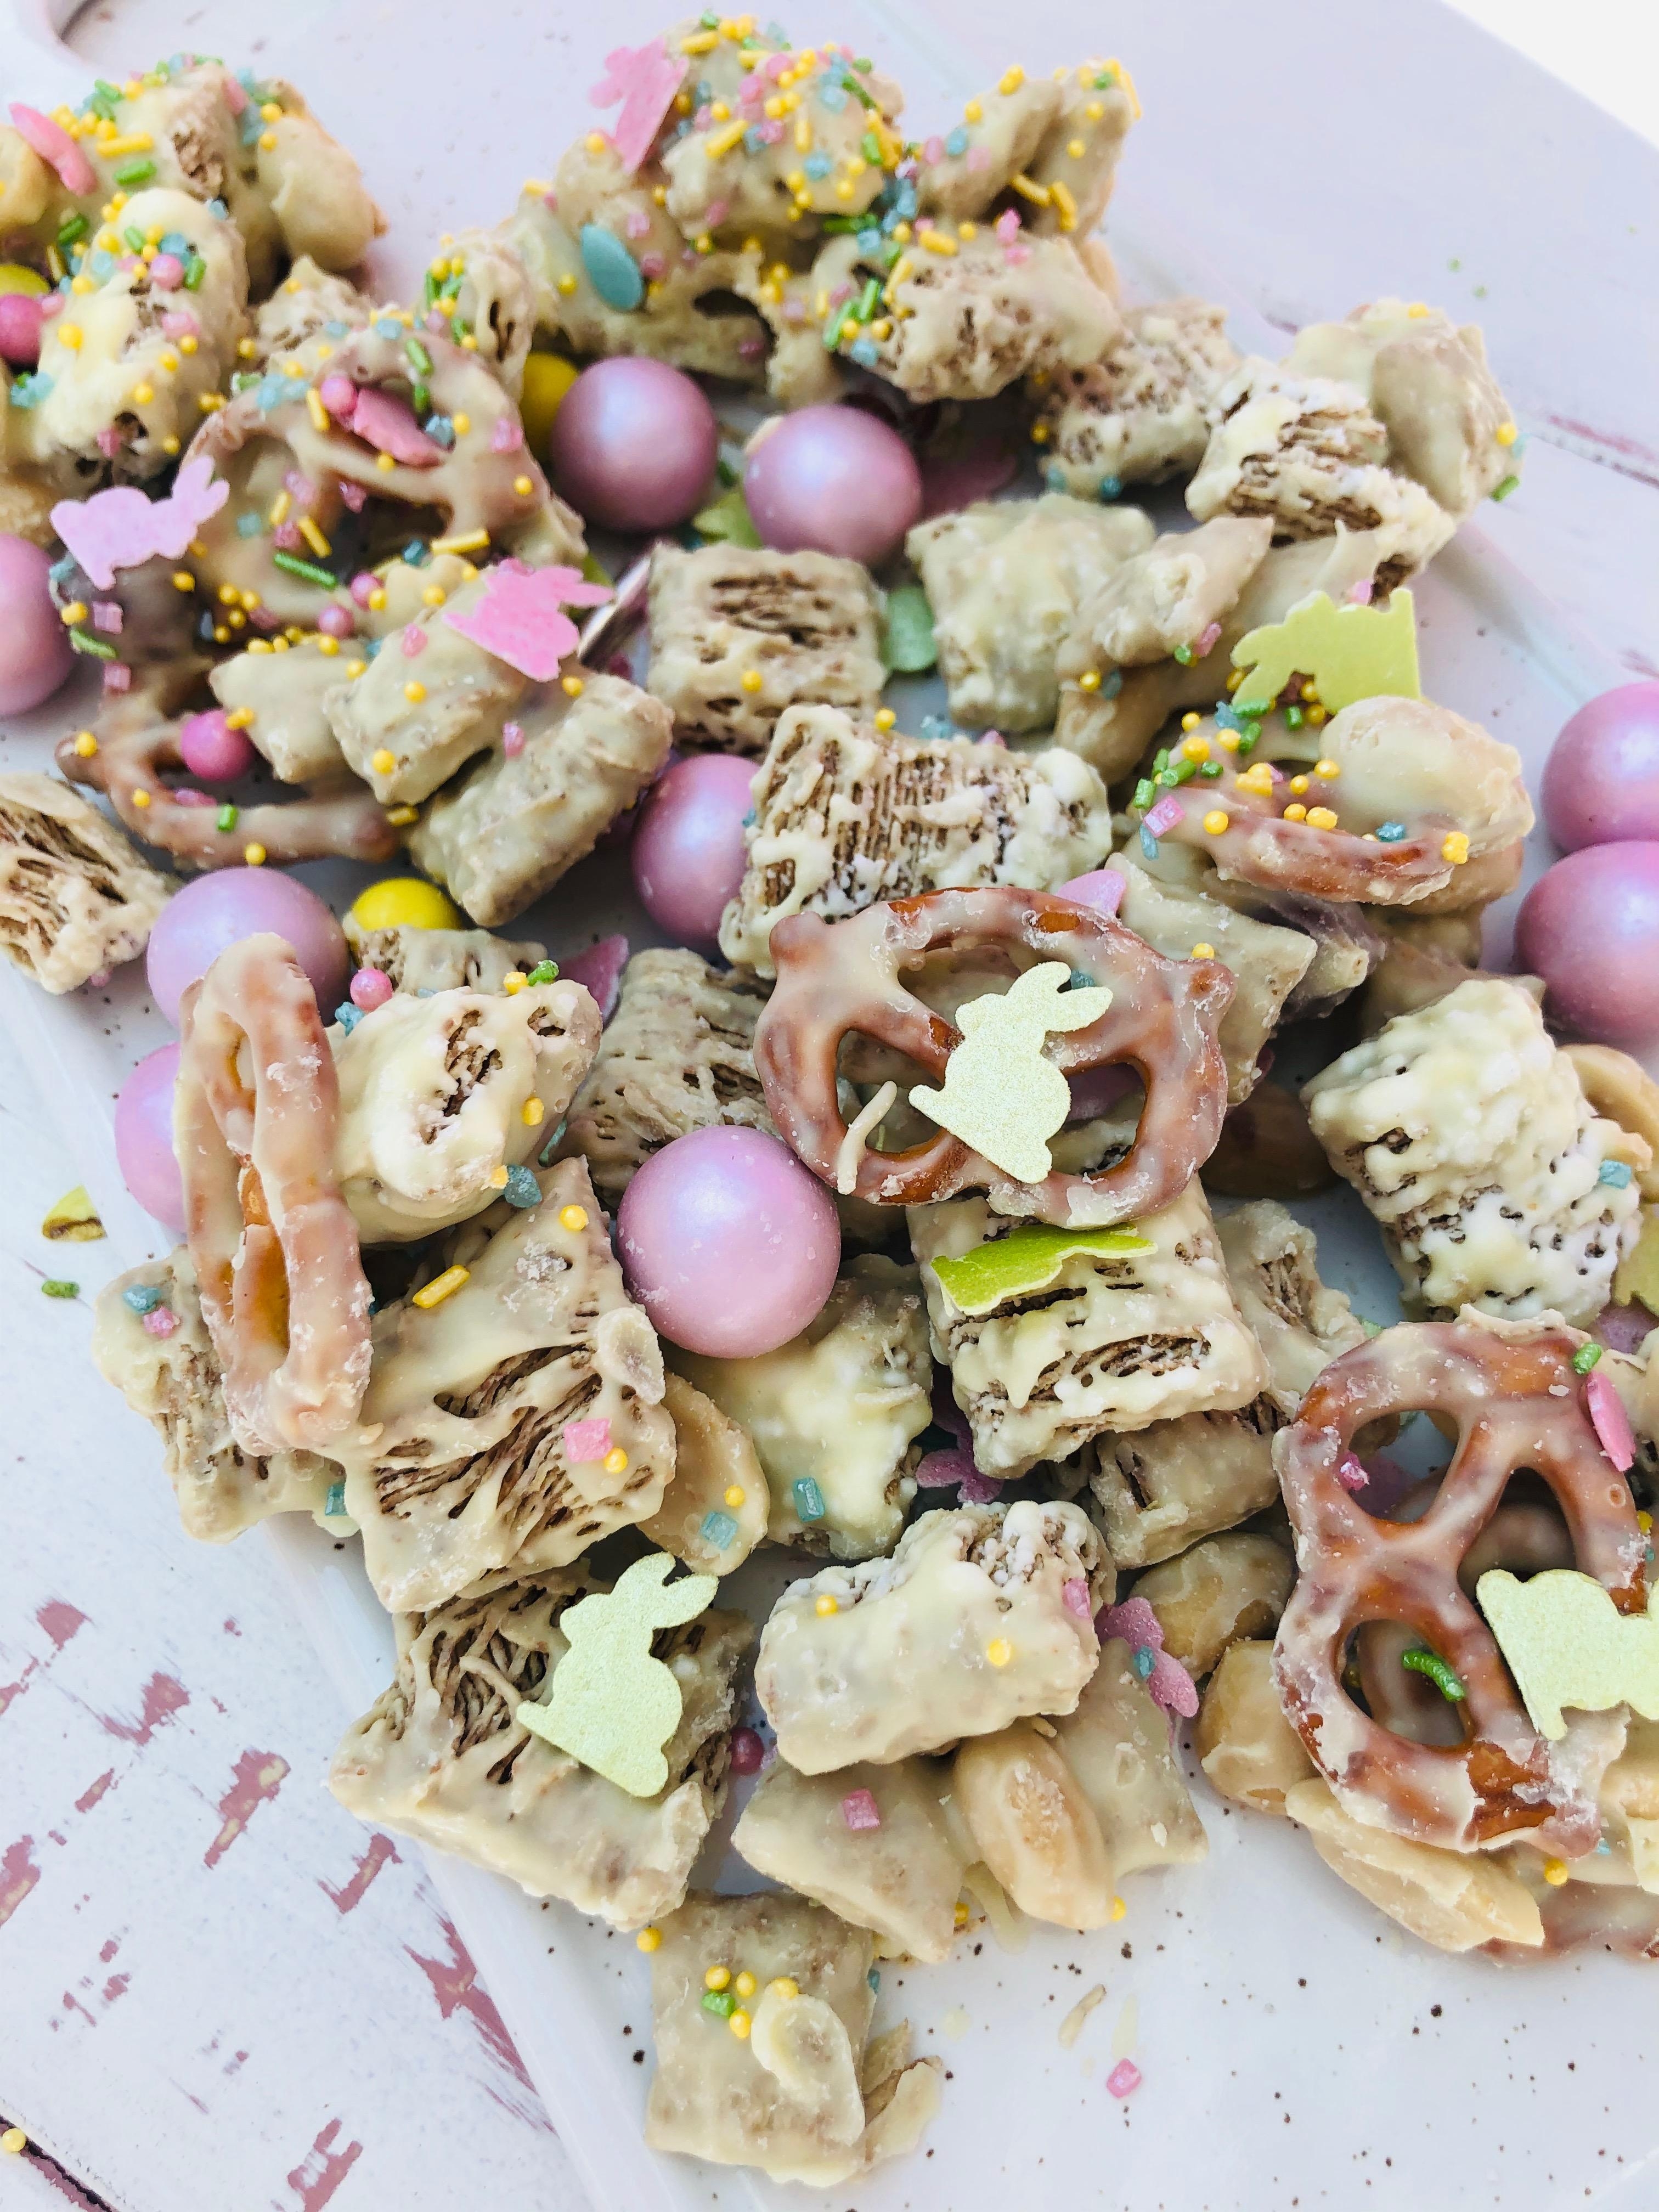 Lust auf süß-salzigen Oster-Crunch? Auf unserem Instagram-Kanal gibt's das Rezept! 🐰 ✨#rezept #ostercrunch #ostern